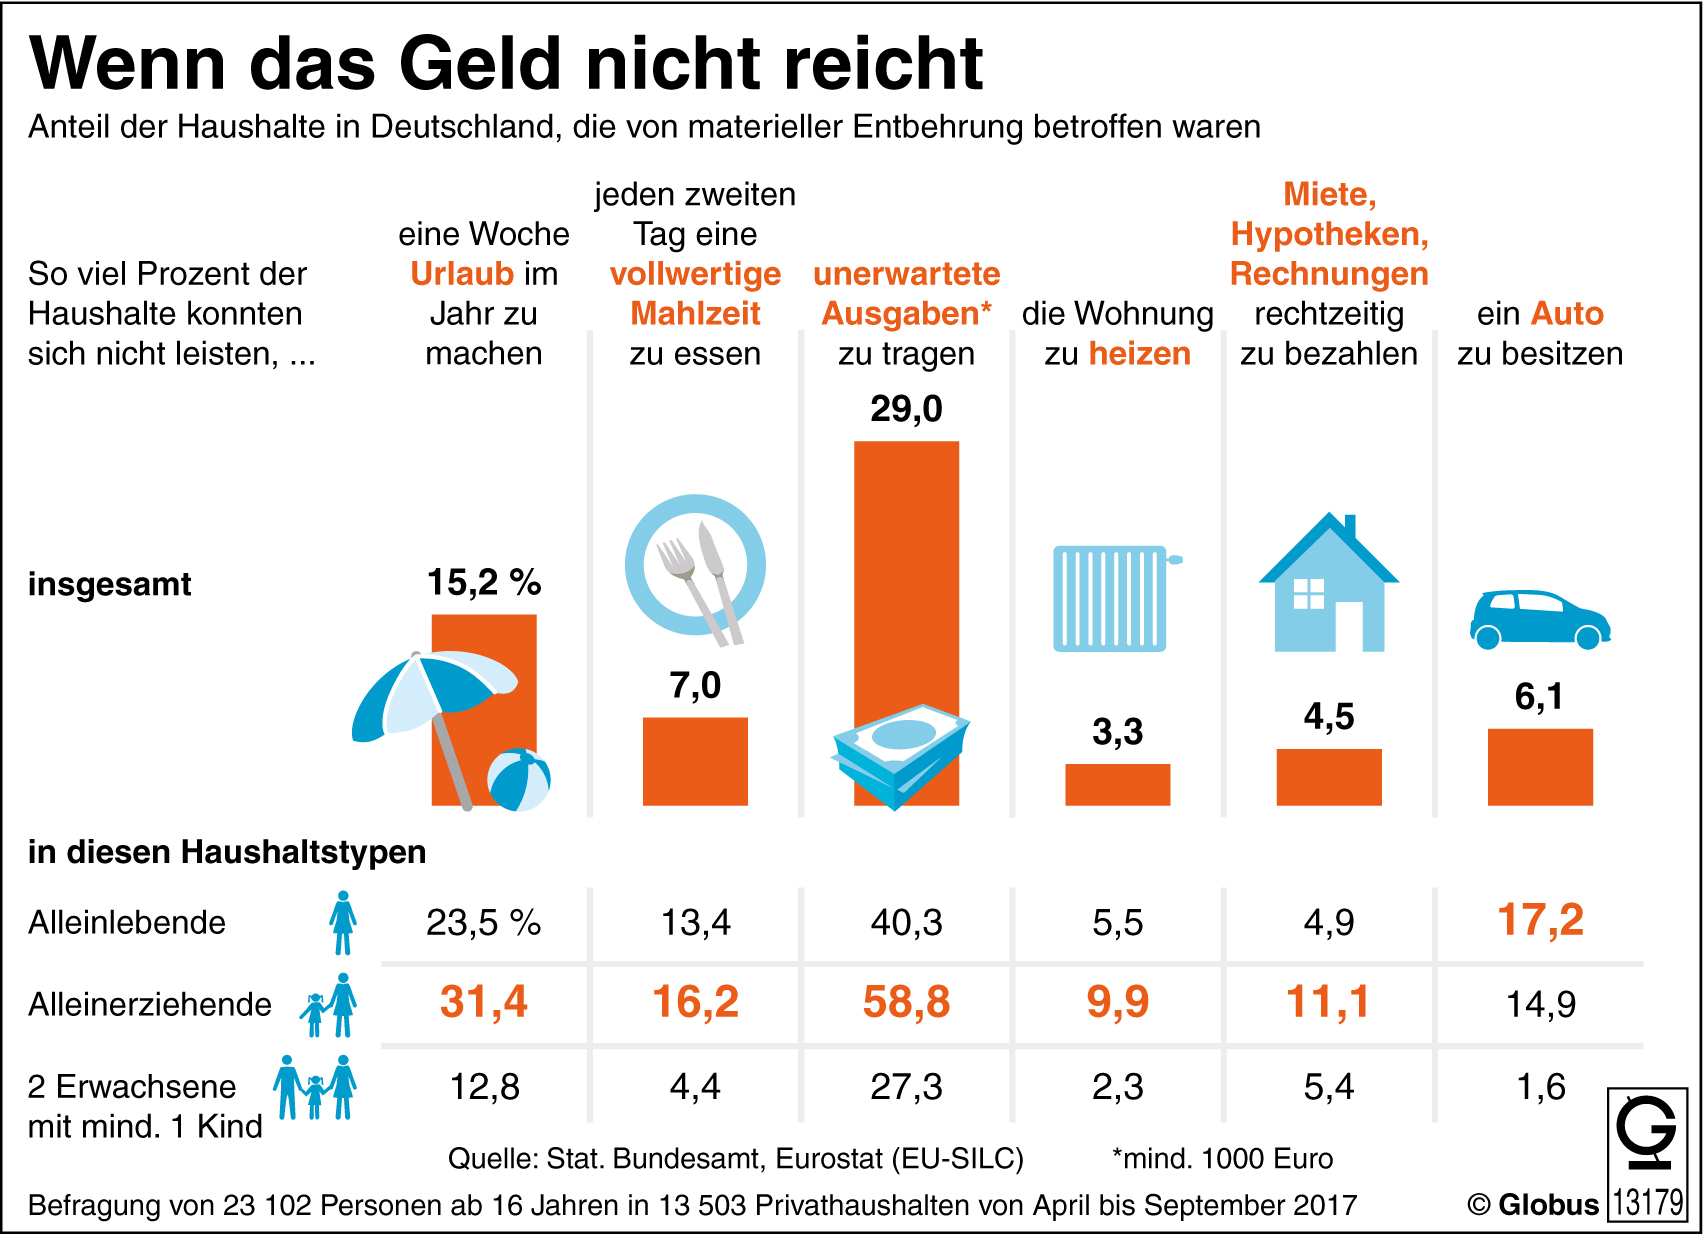 Grafik, wofür in deutschen Haushalten das Geld nicht reicht, vor allem Alleinerziehende betroffen, picture alliance